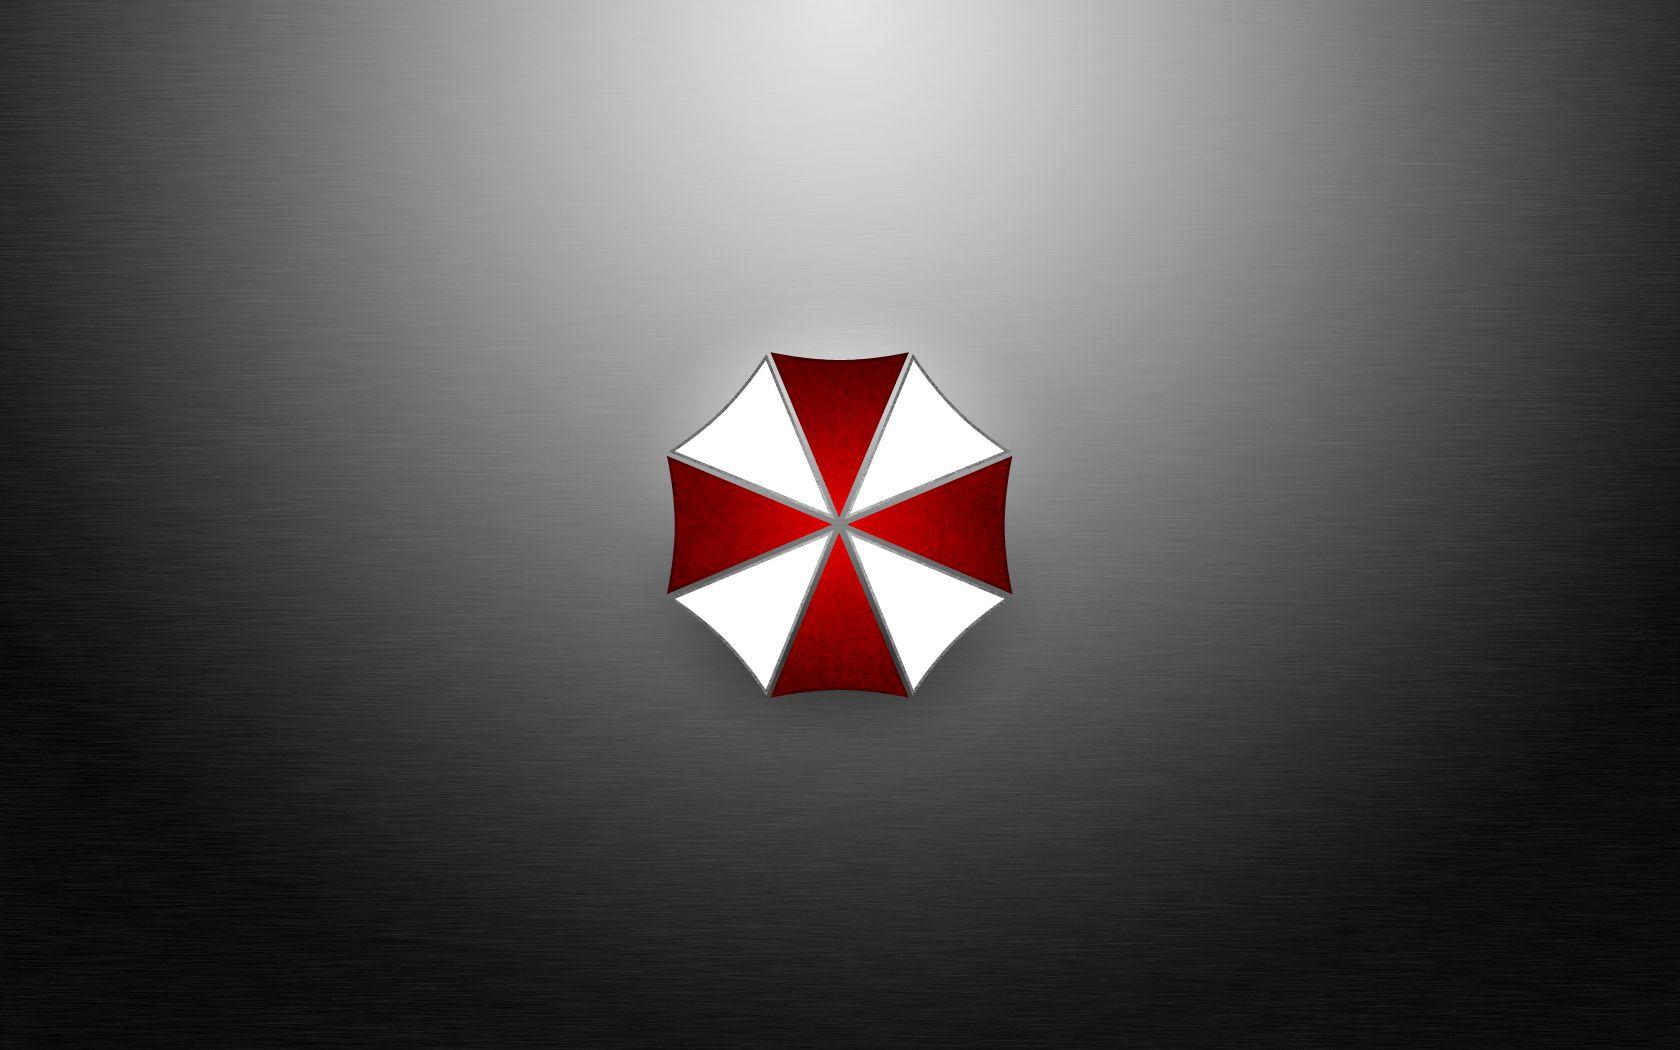 HD wallpaper: Umbrella Corporation, umbrella corporation logo